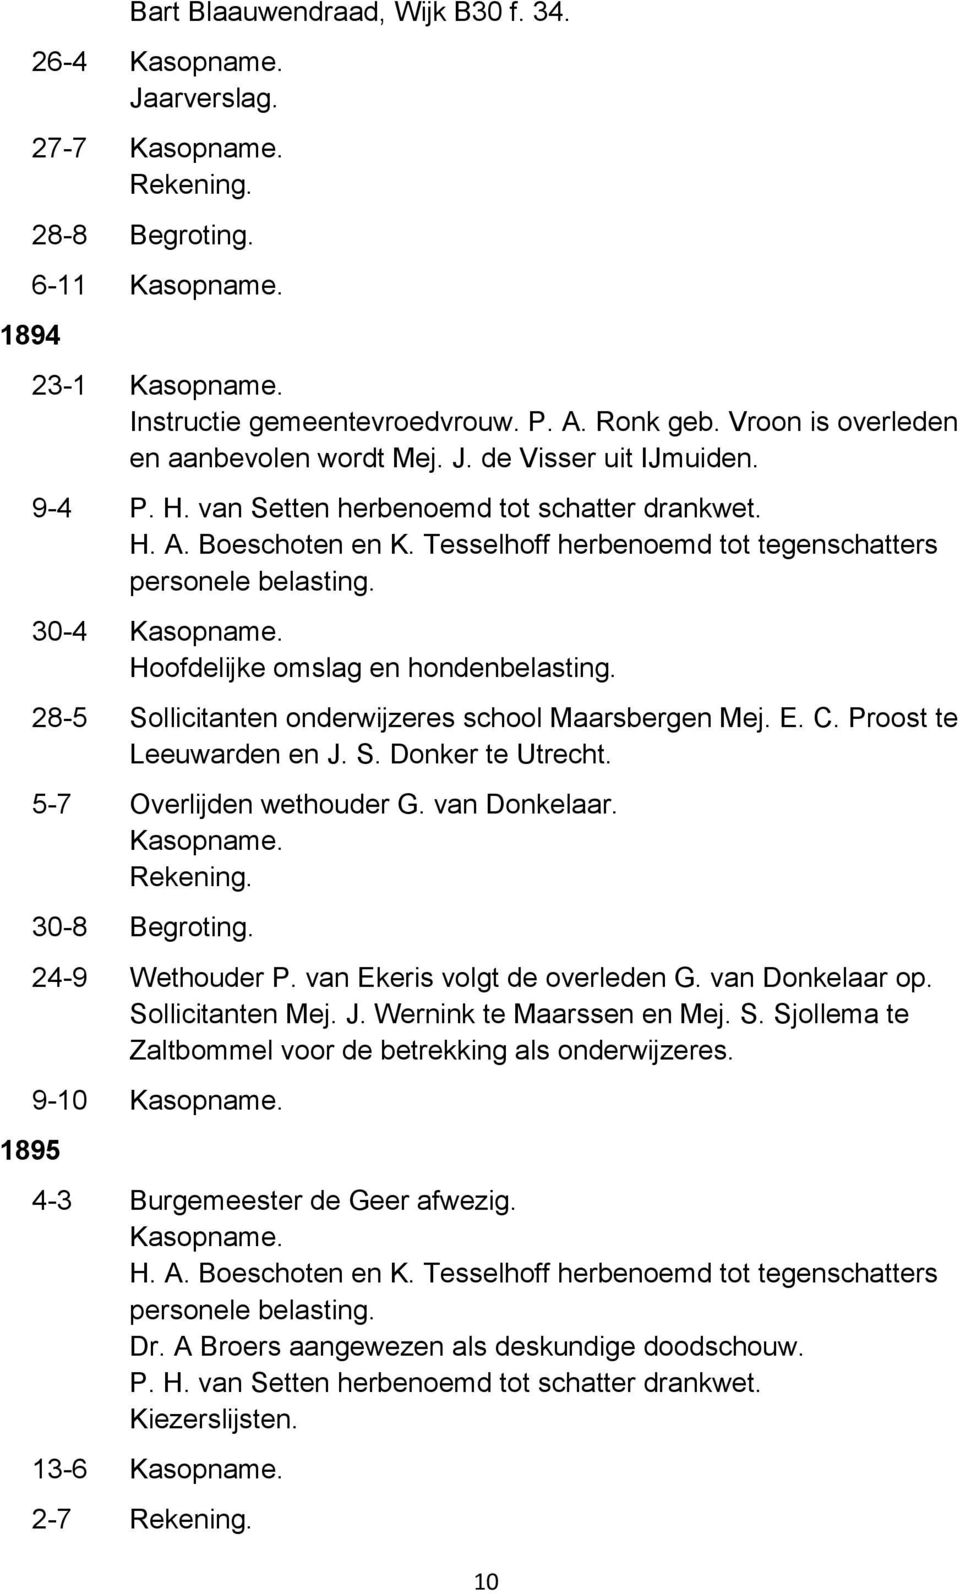 5-7 Overlijden wethouder G. van Donkelaar. 30-8 Begroting. 24-9 Wethouder P. van Ekeris volgt de overleden G. van Donkelaar op. Sollicitanten Mej. J. Wernink te Maarssen en Mej. S. Sjollema te Zaltbommel voor de betrekking als onderwijzeres.